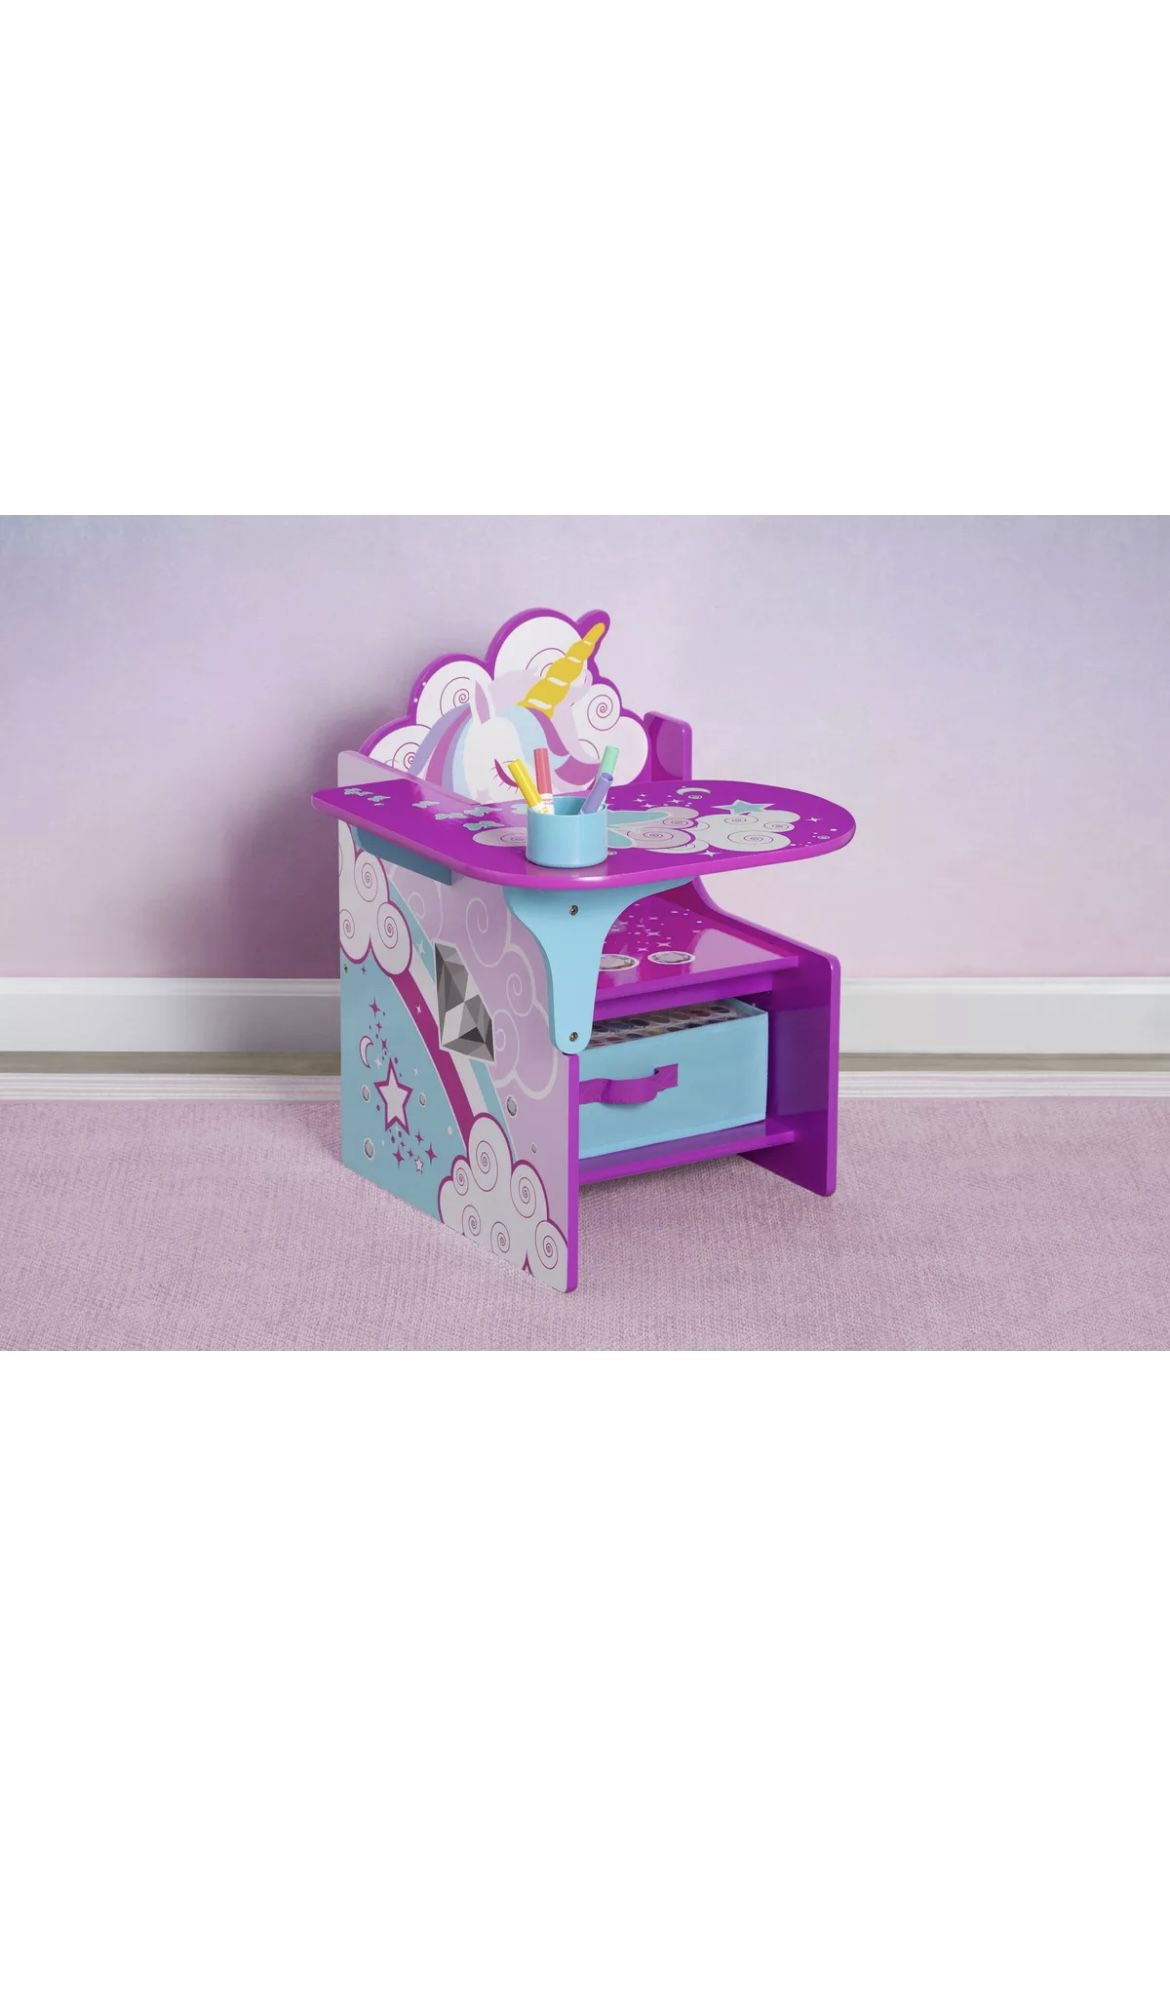 Children Unicorn Chair Desk with Storage Bin